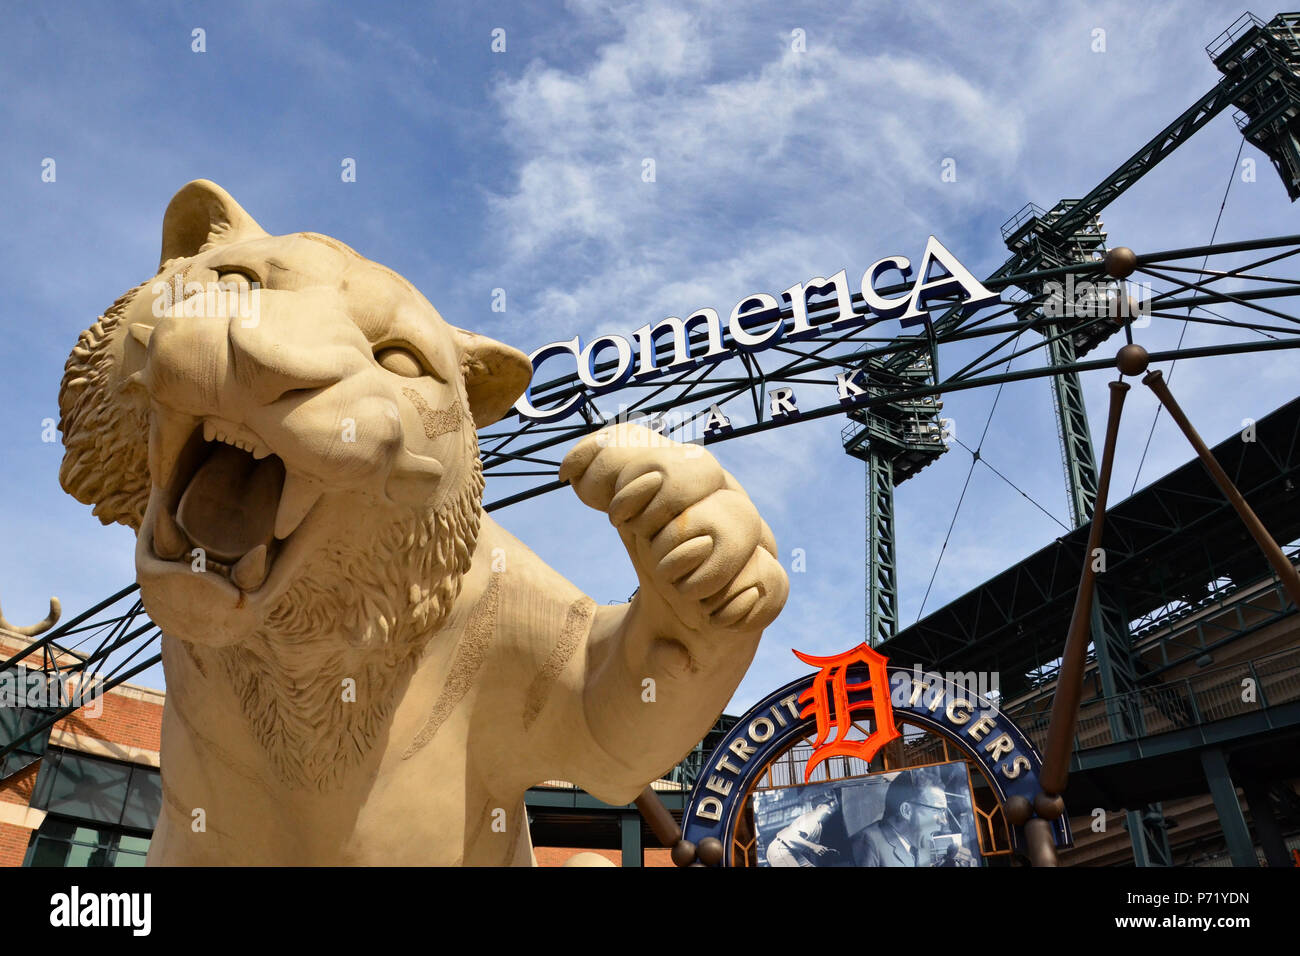 DETROIT, MI / STATI UNITI D'America - 21 ottobre 2017: la tigre presso l'entrata principale del Comerica Park, casa dei Detroit Tigers, accoglie i visitatori. Foto Stock